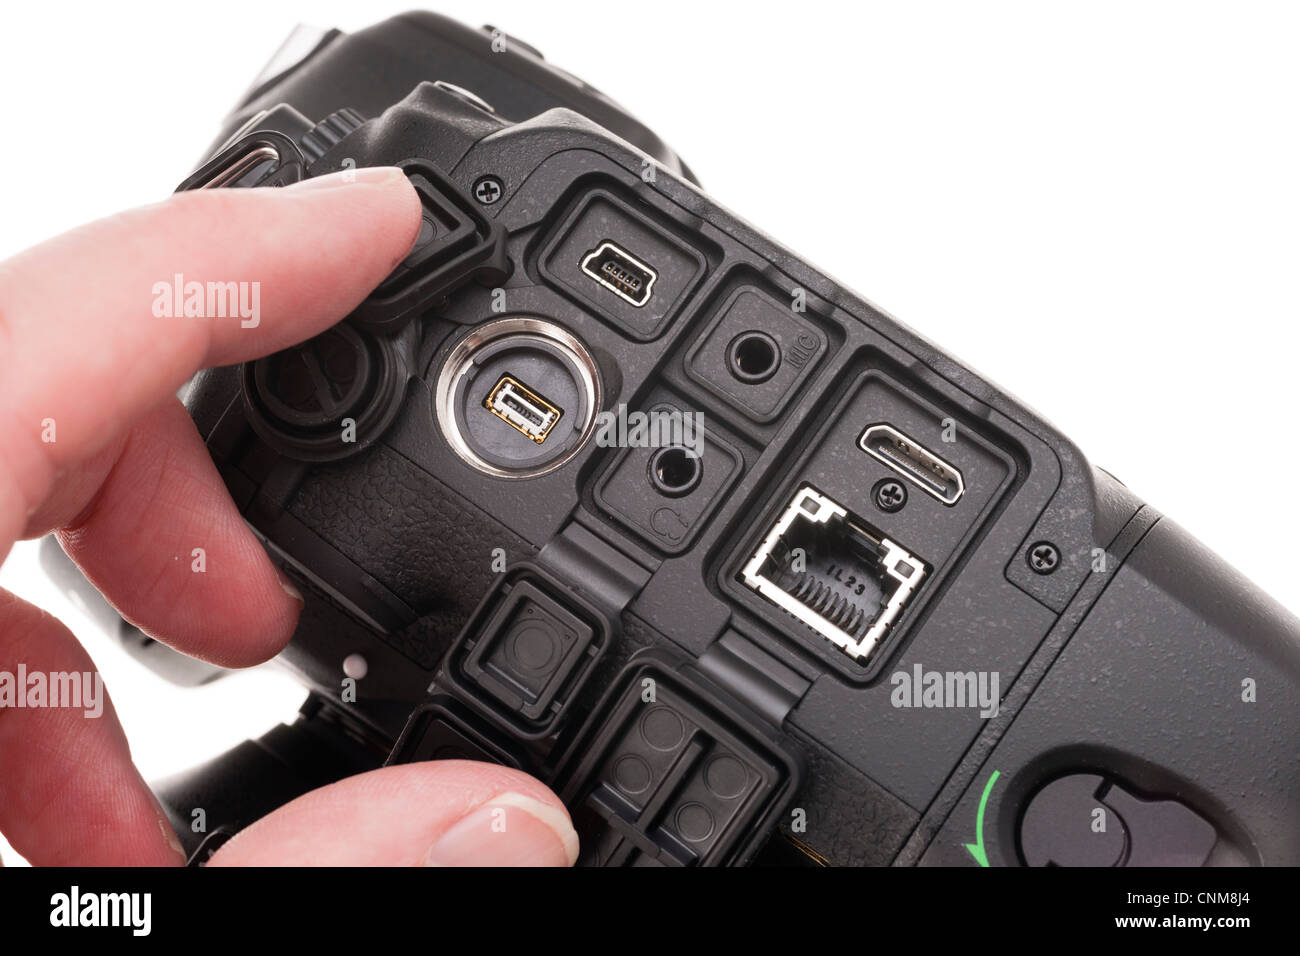 Matériel photographique Nikon D4 - y compris les interfaces Ethernet, USB, HDMI, microphone, écouteurs, télécommande. Banque D'Images